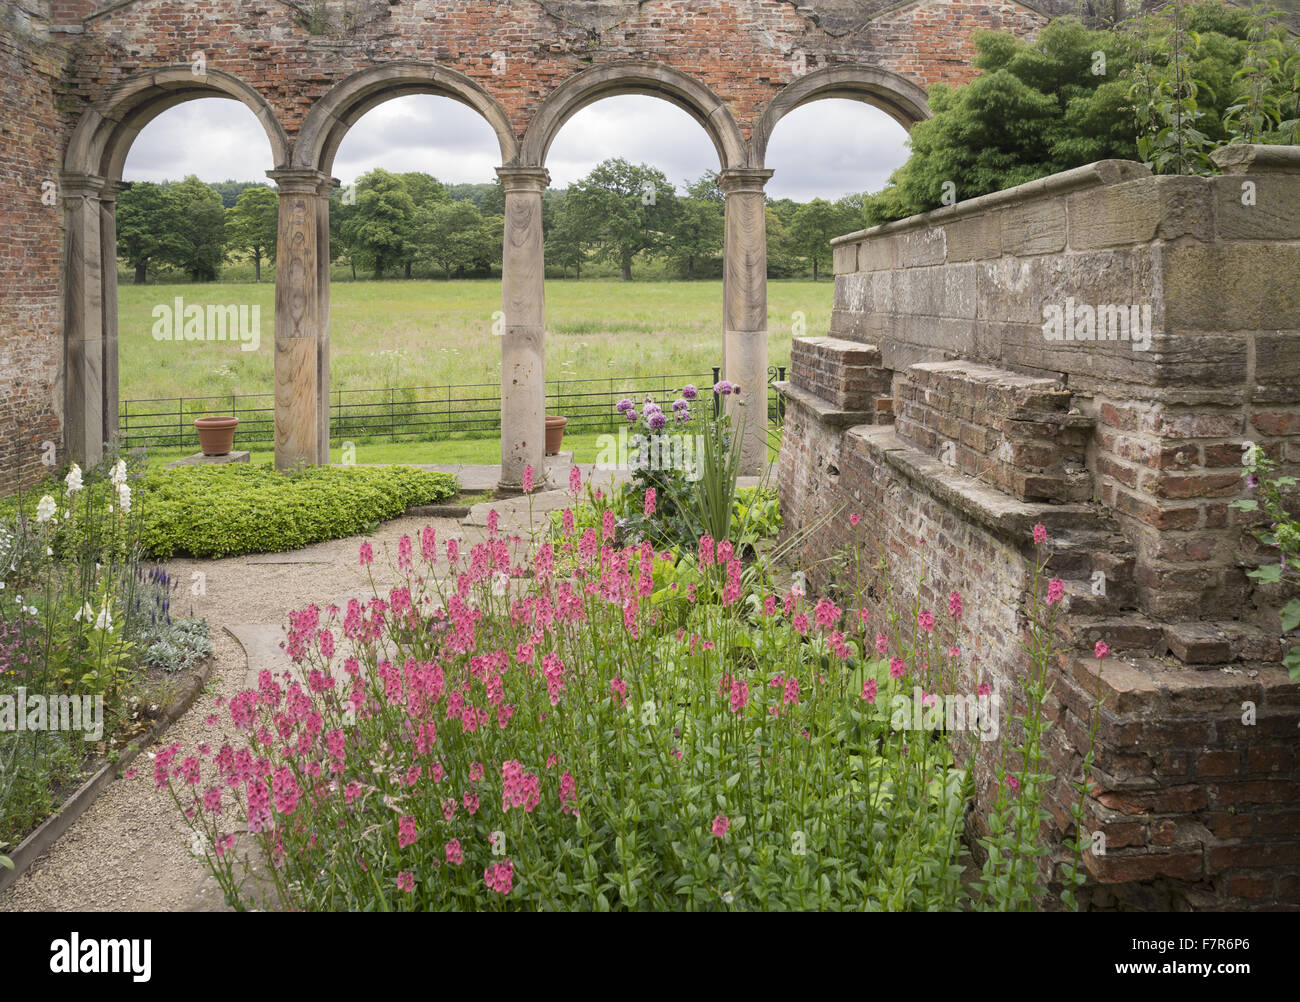 Blumen wachsen in der zerstörten Orangerie Gibside, Tyne & Wear. Gibside entstand aus einer der reichsten Männer in Georgian England und bietet eine fantastische Aussicht, weiten, offenen Flächen, faszinierende historische Gebäude und Ruinen. Stockfoto